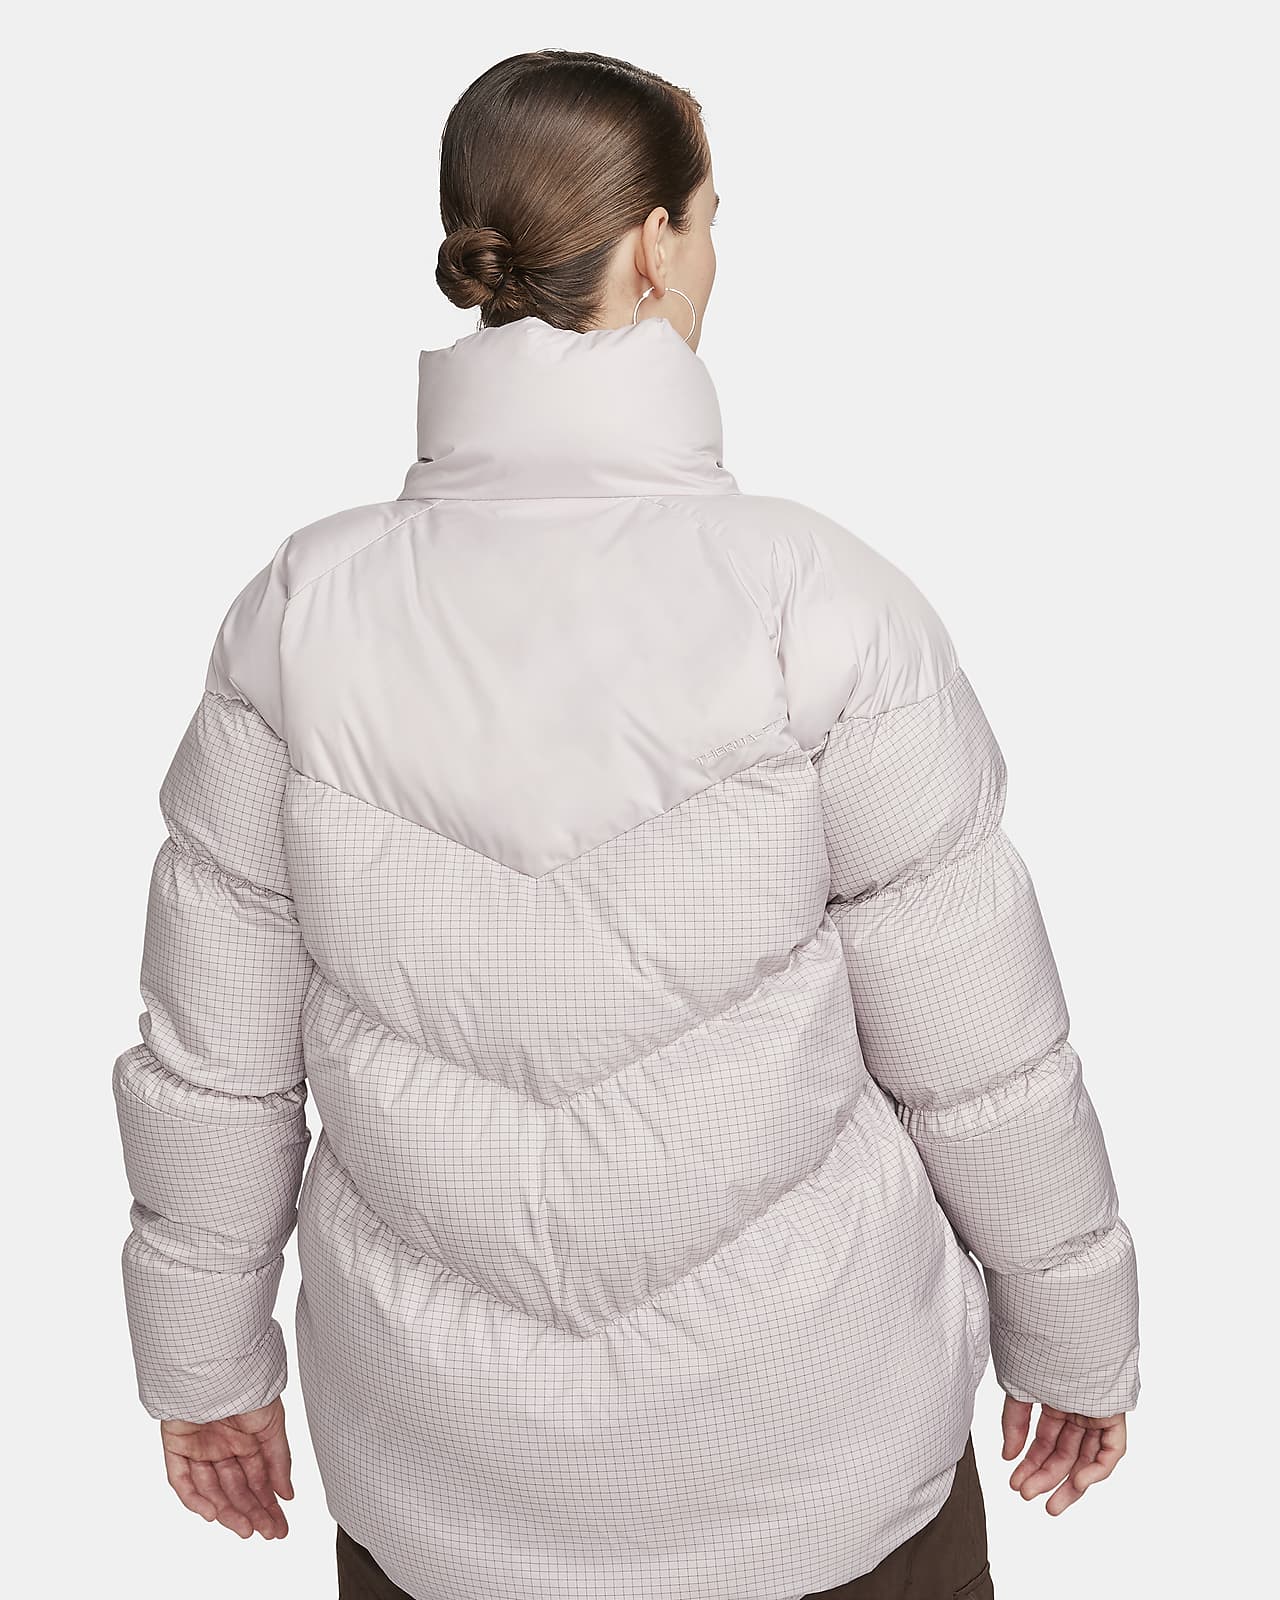 Nike Sportswear Windpuffer Women's Therma-FIT Loose Puffer Jacket.